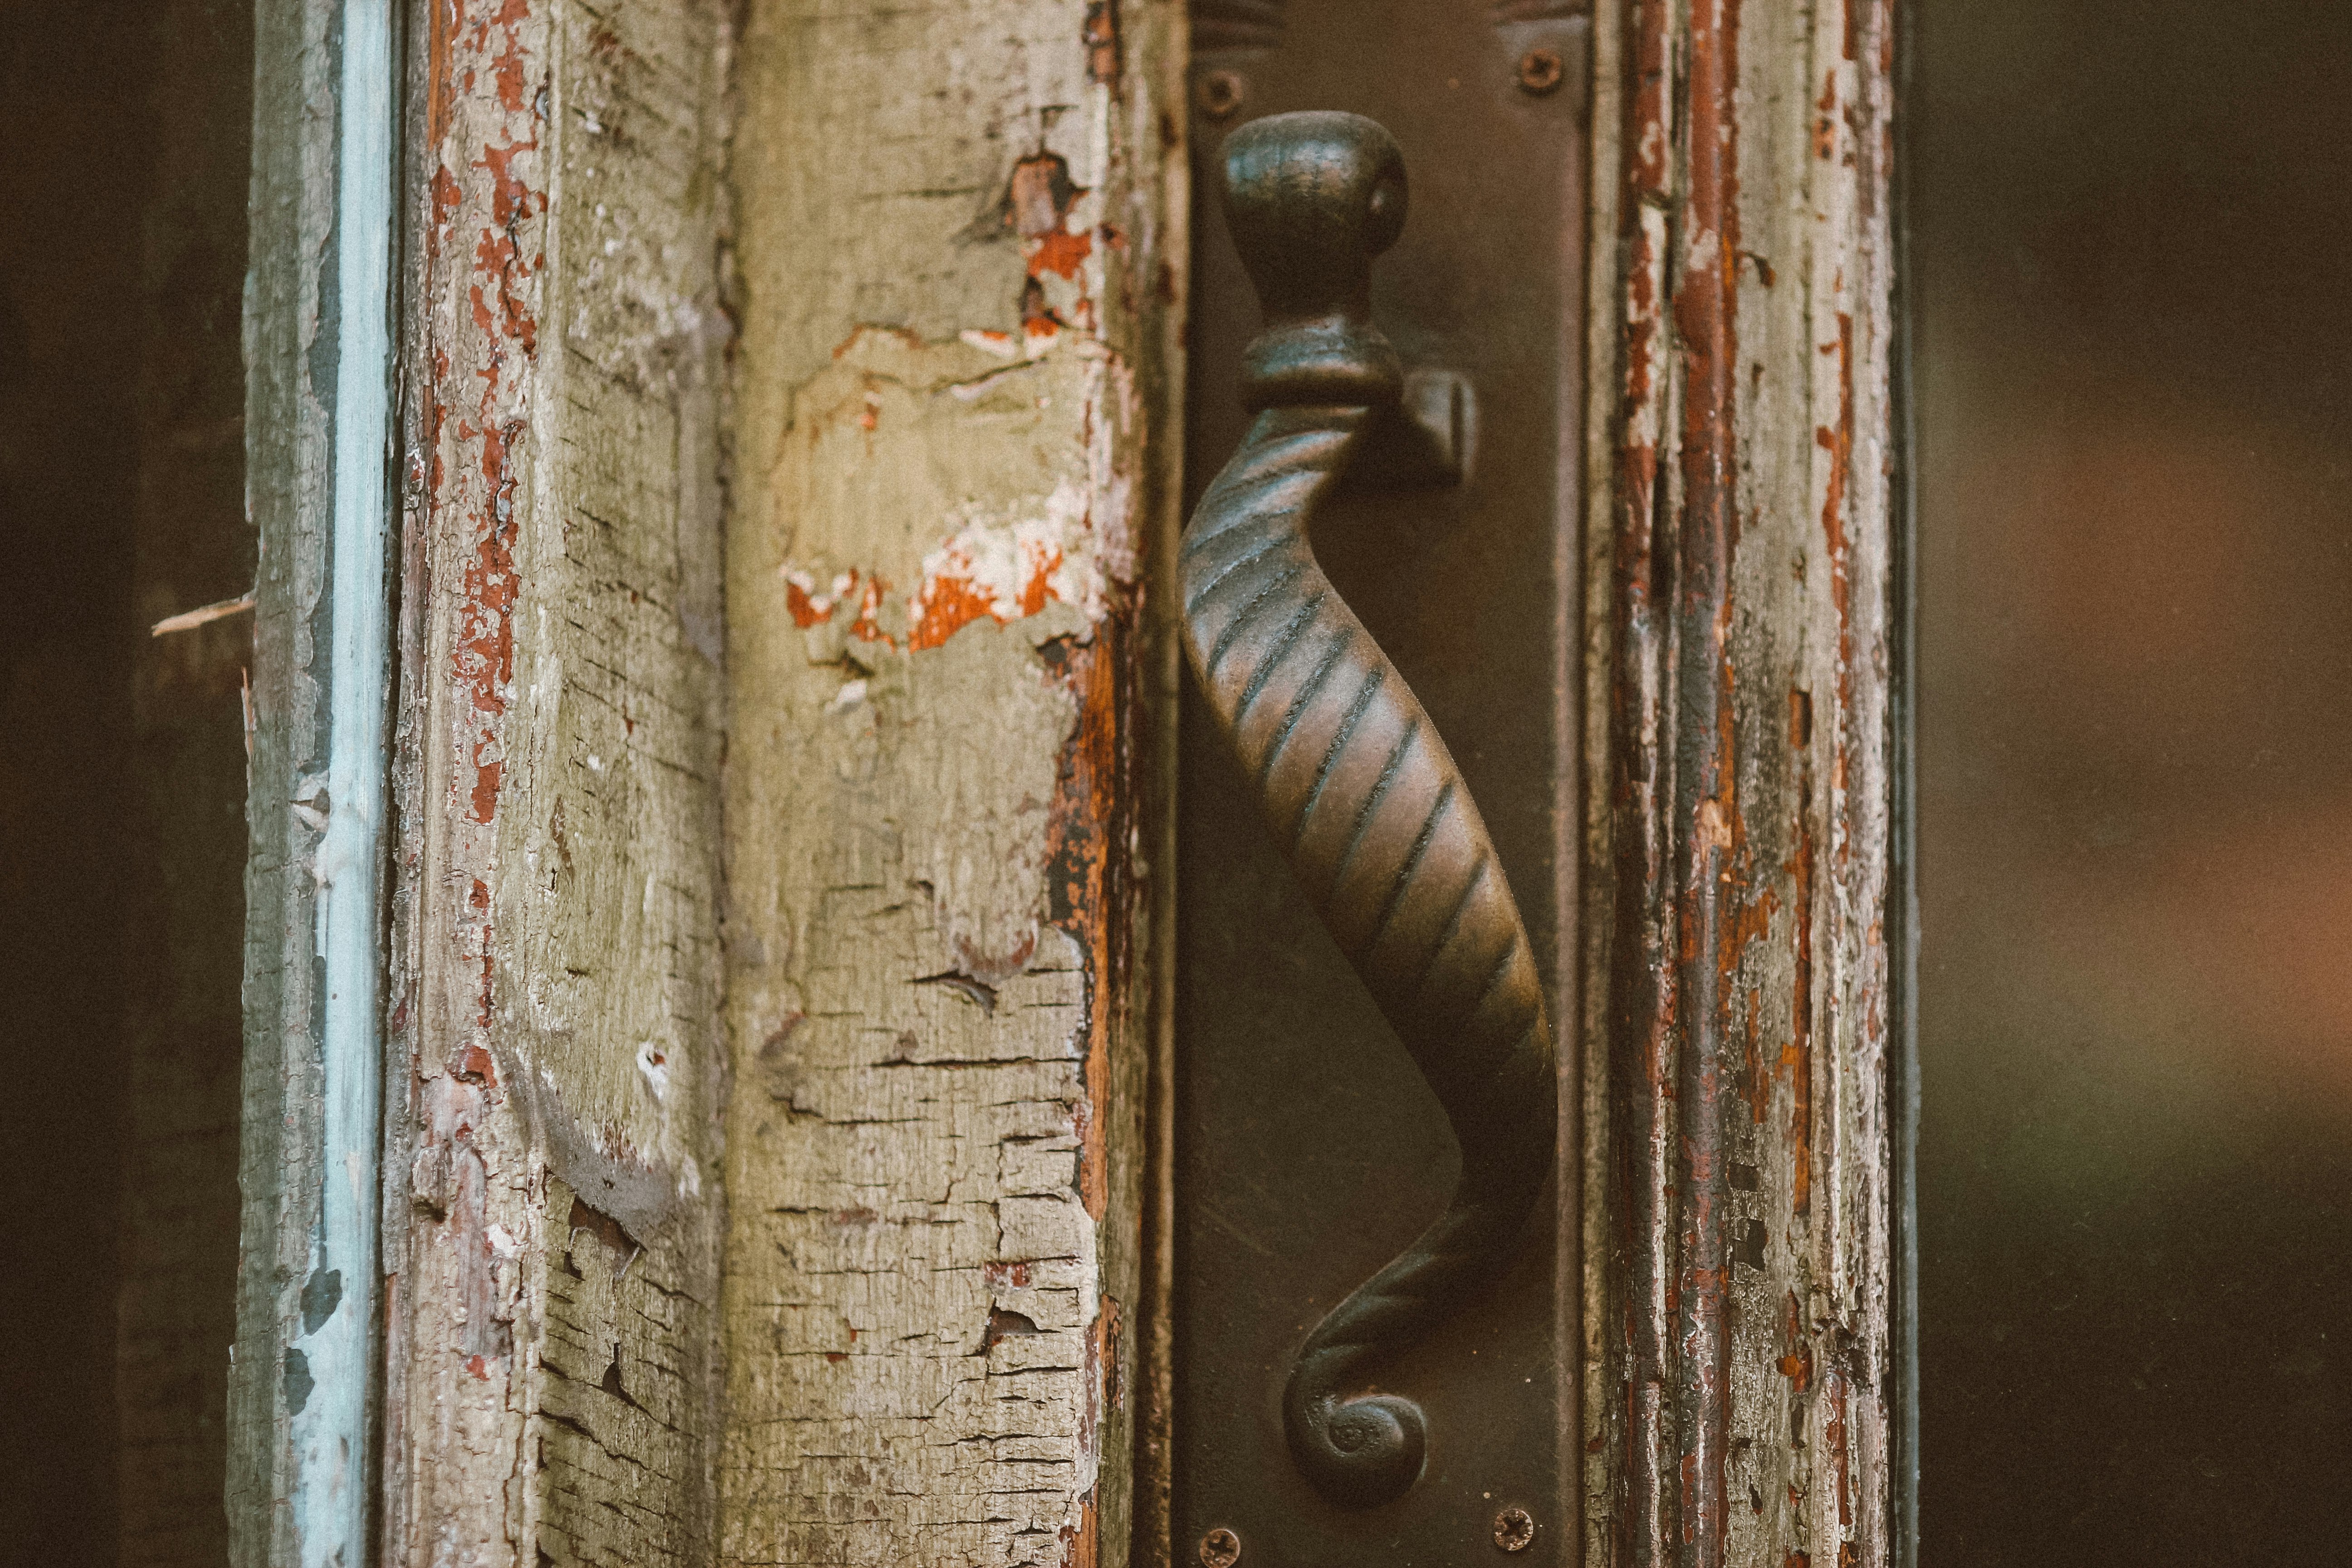 black metal door handle on brown wooden door